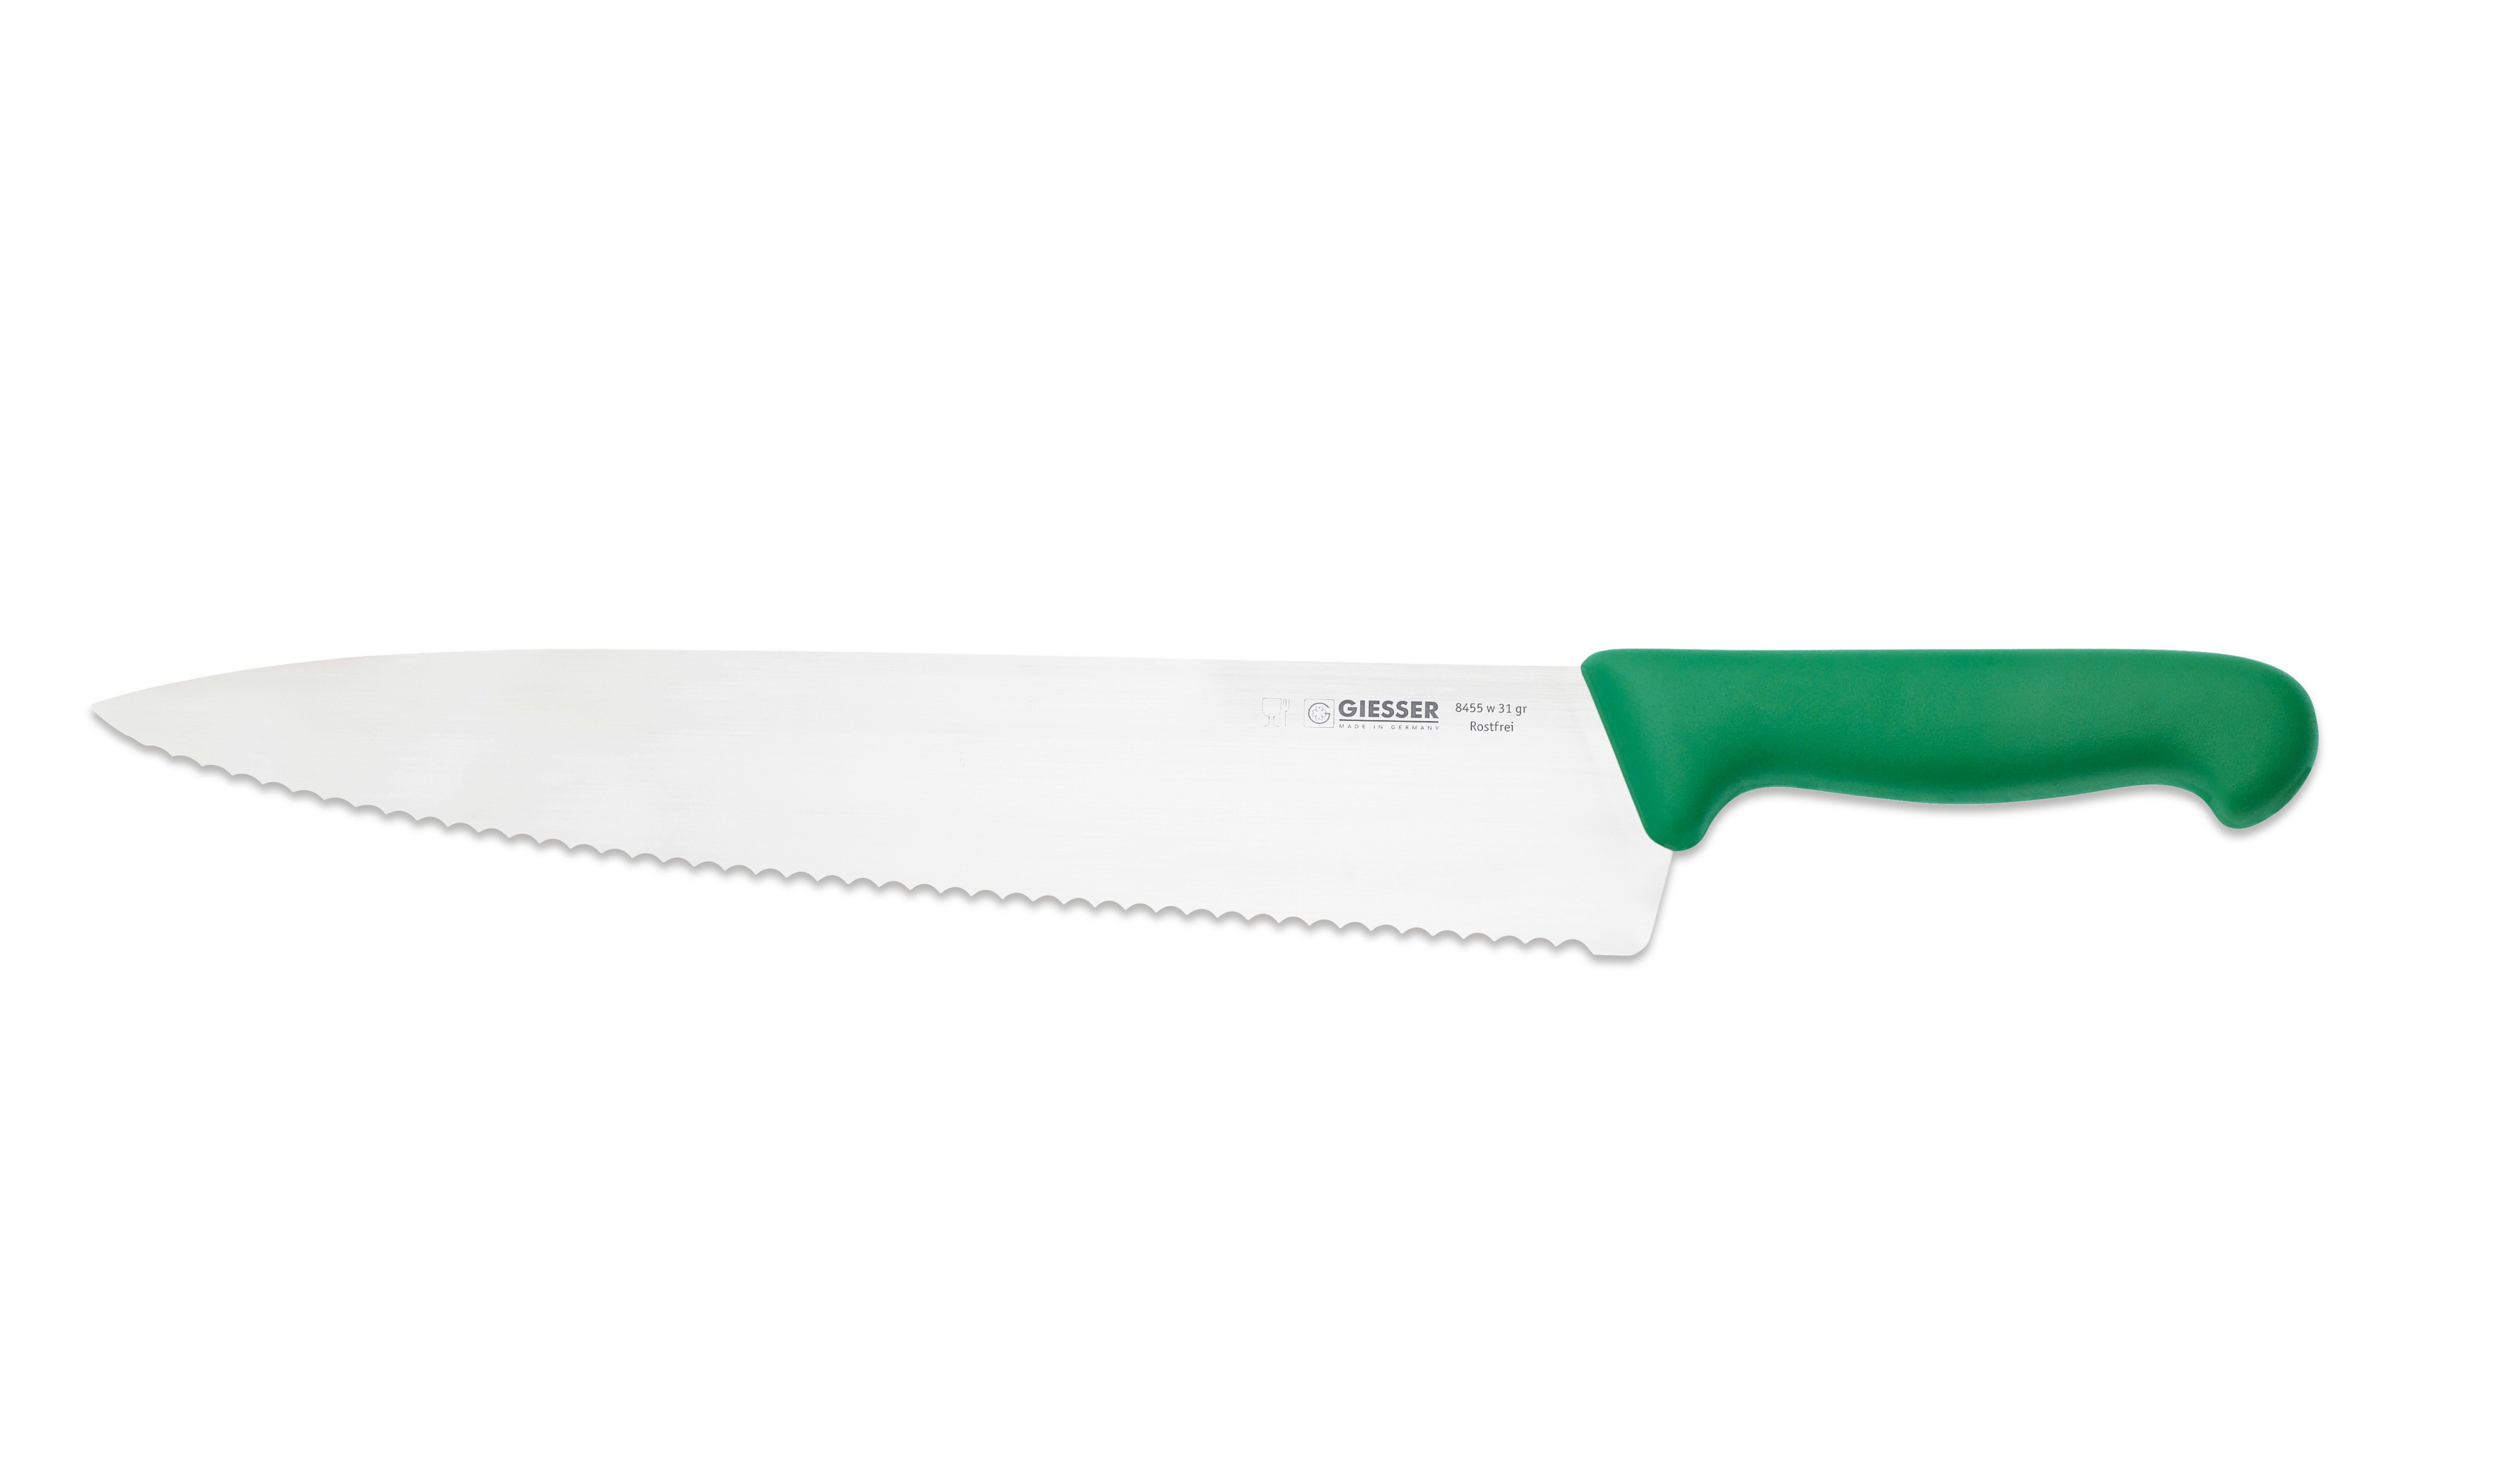 Giesser Messer Kochmesser Küchenmesser breit 8455, Rostfrei, breite Form, scharf, Handabzug, Ideal für jede Küche grün-Welle